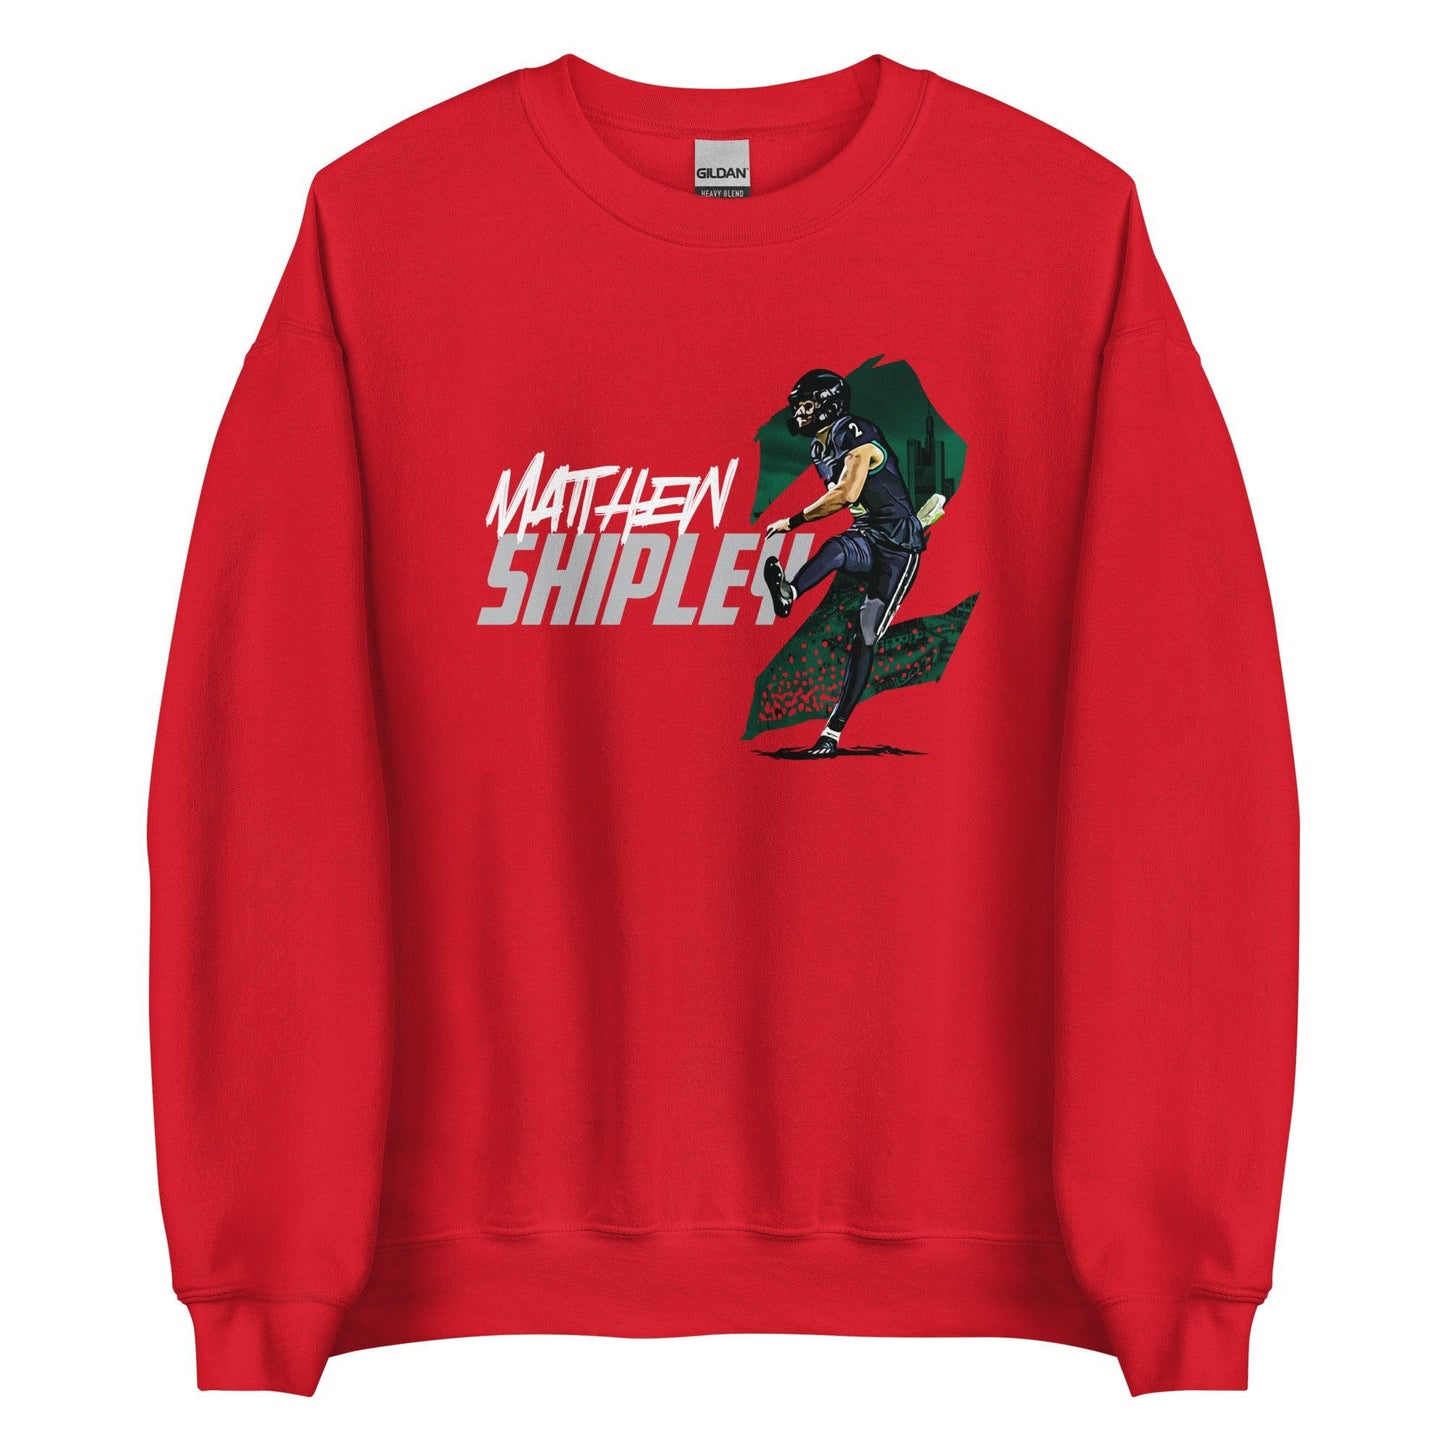 Matthew Shipley "Gameday" Sweatshirt - Fan Arch